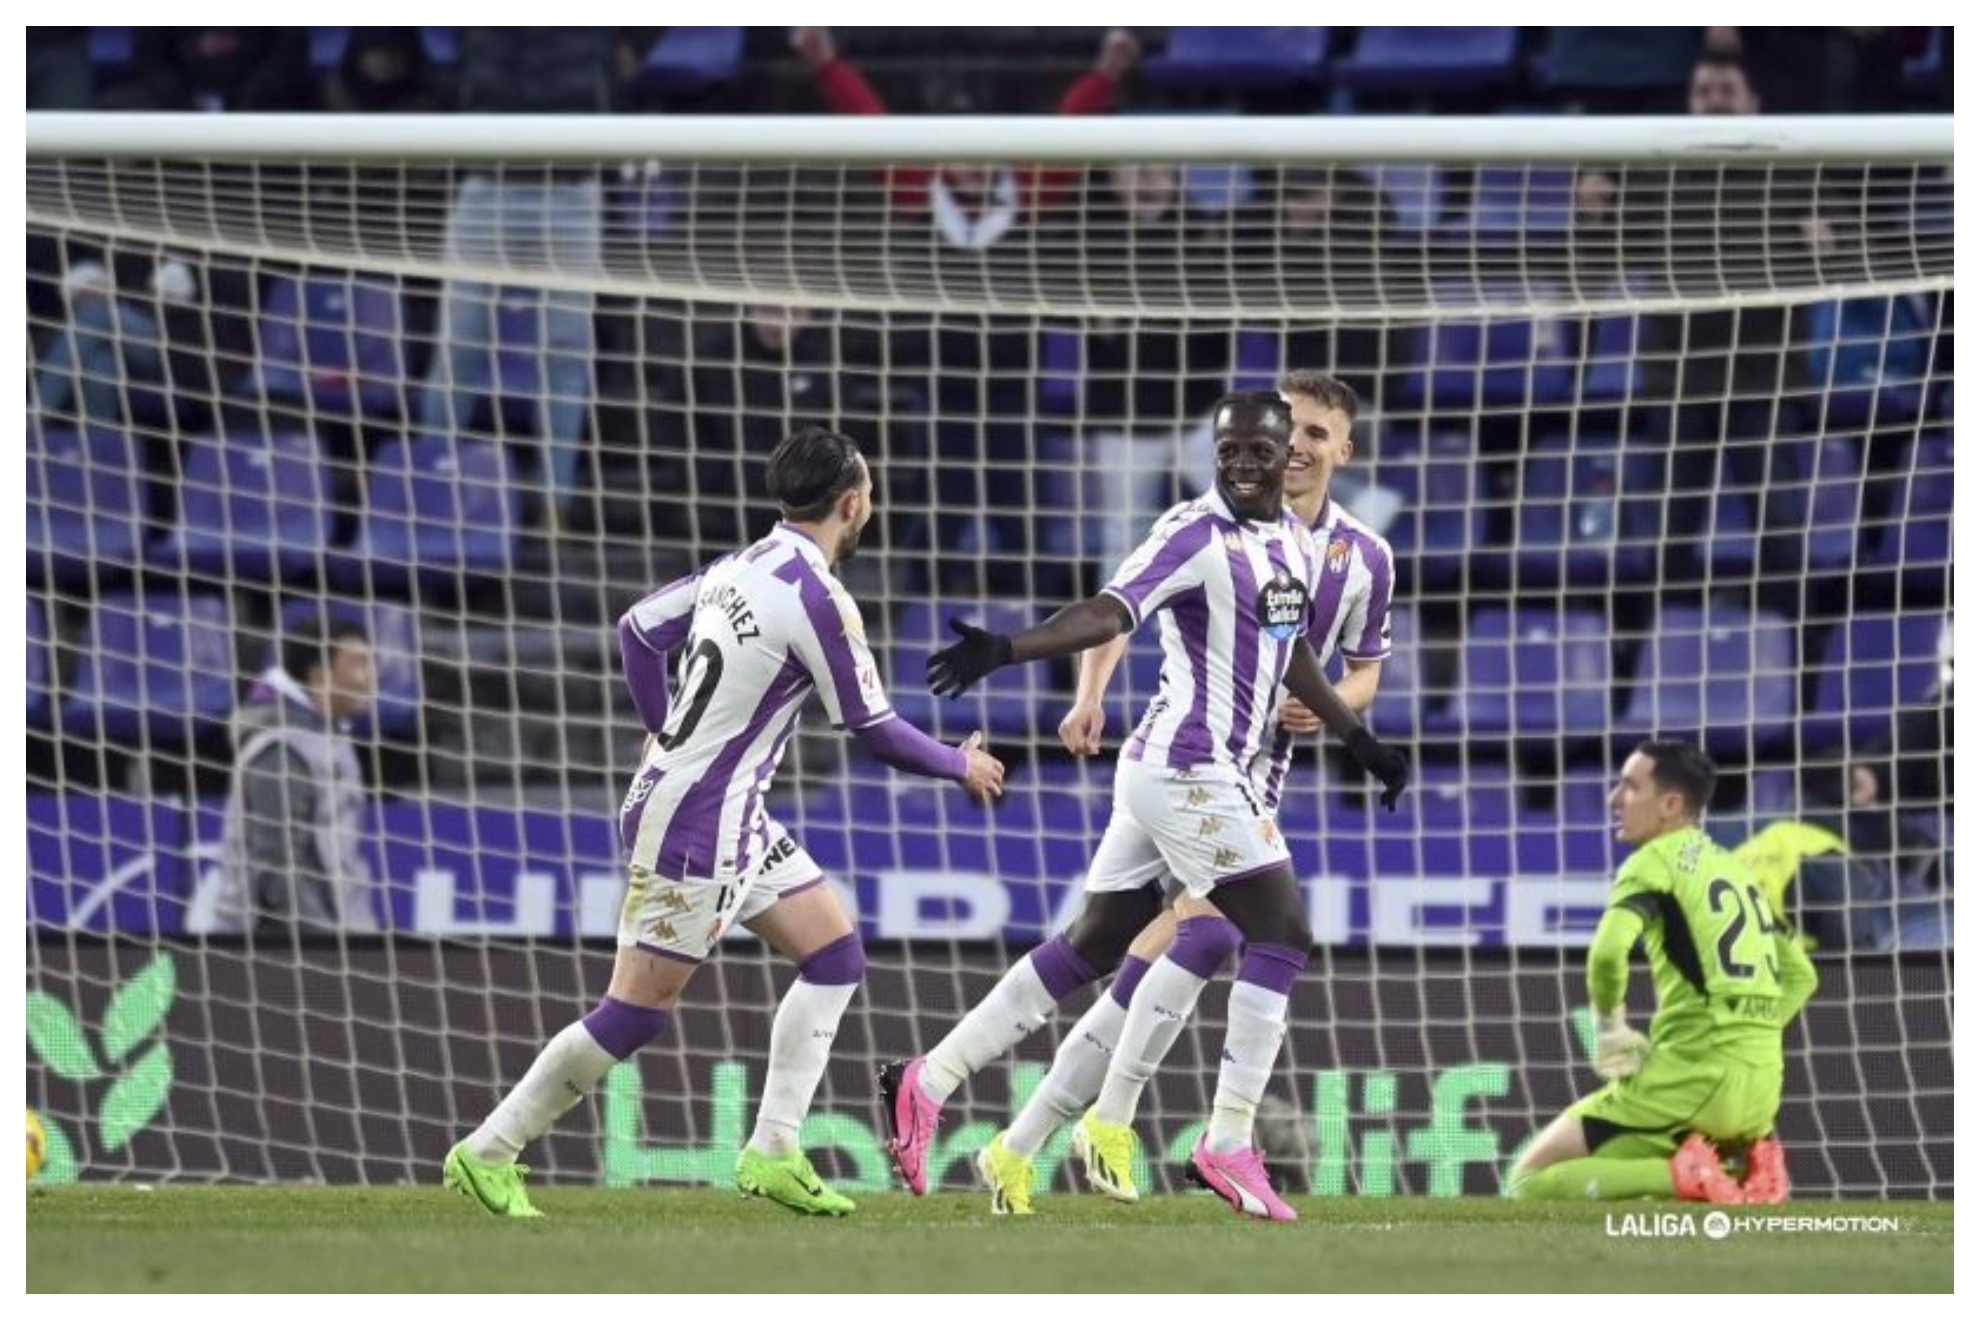 Amath celebra su primer gol al Zaragoza con el batido Edgar Bad�a en el suelo